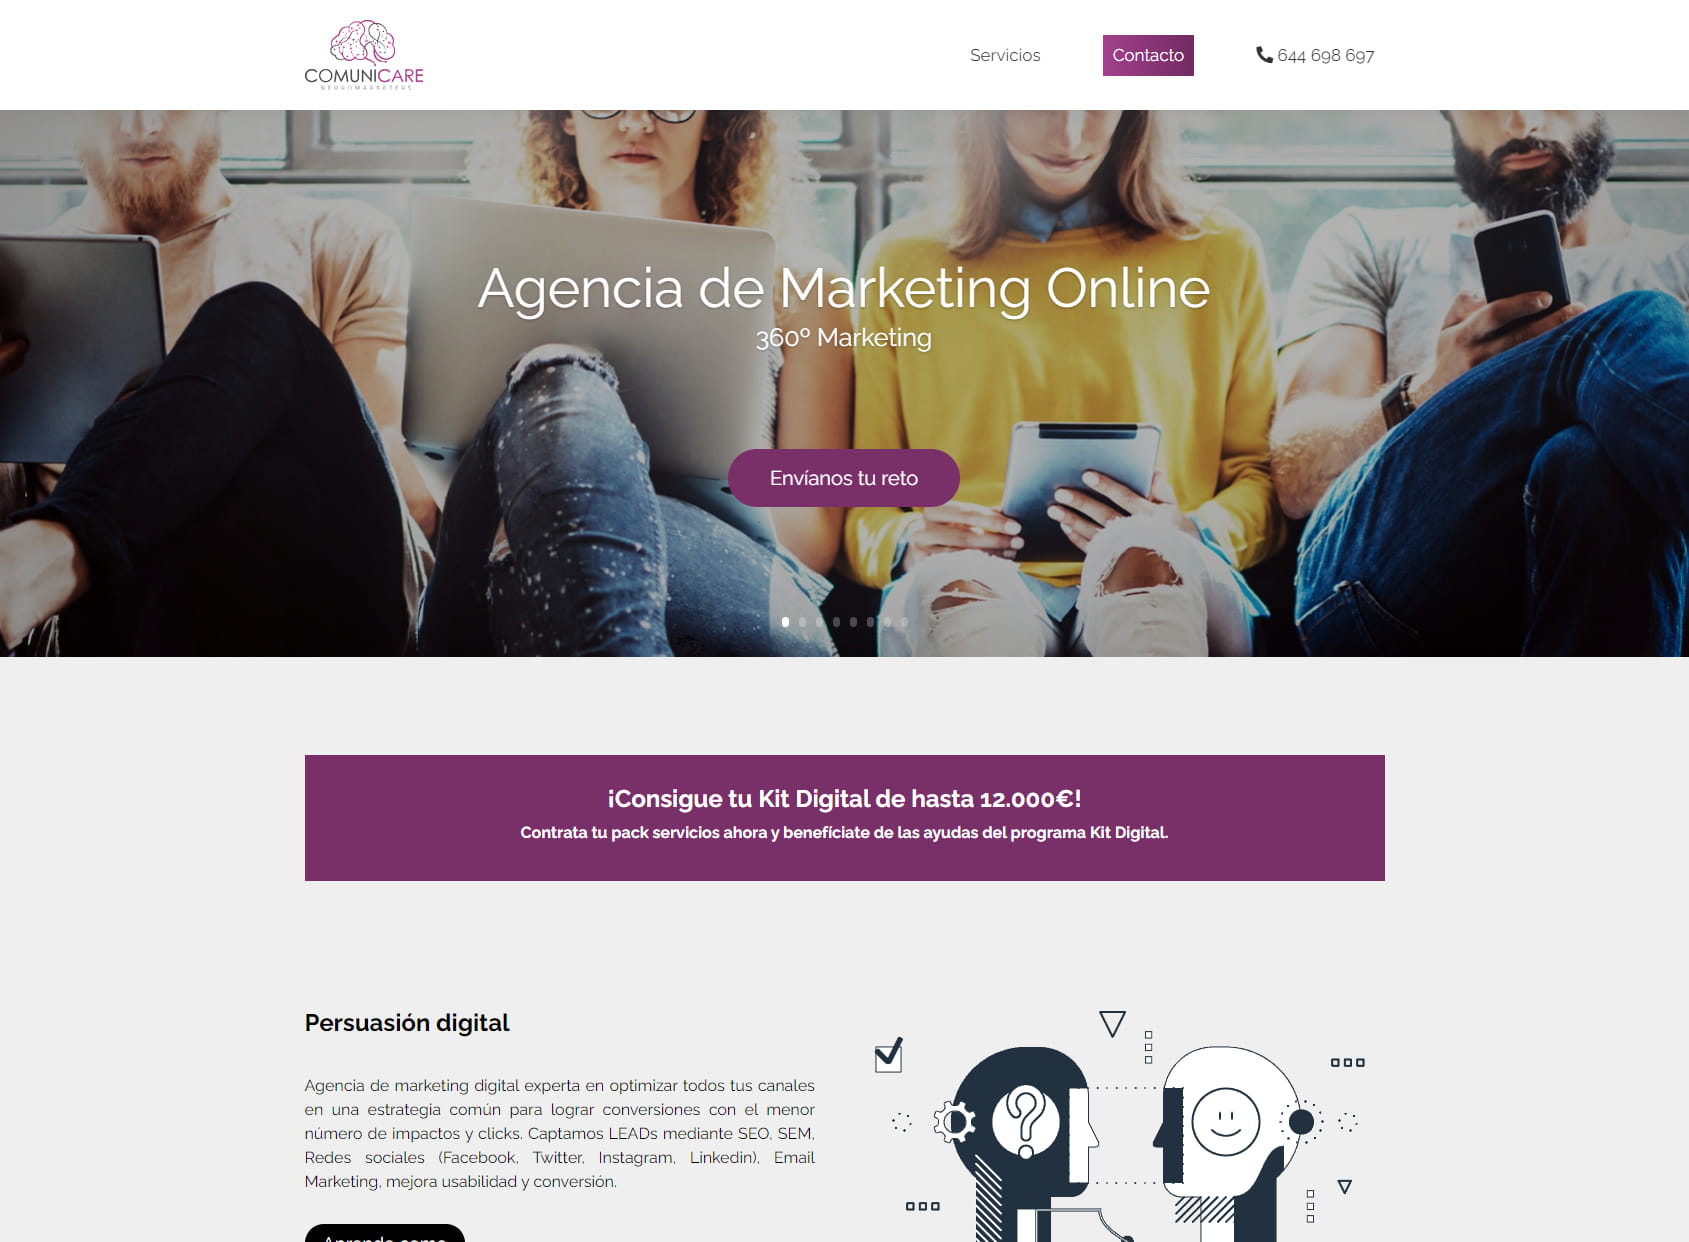 Comunicare | Agencia de marketing y comunicación - Marketing Agency Madrid